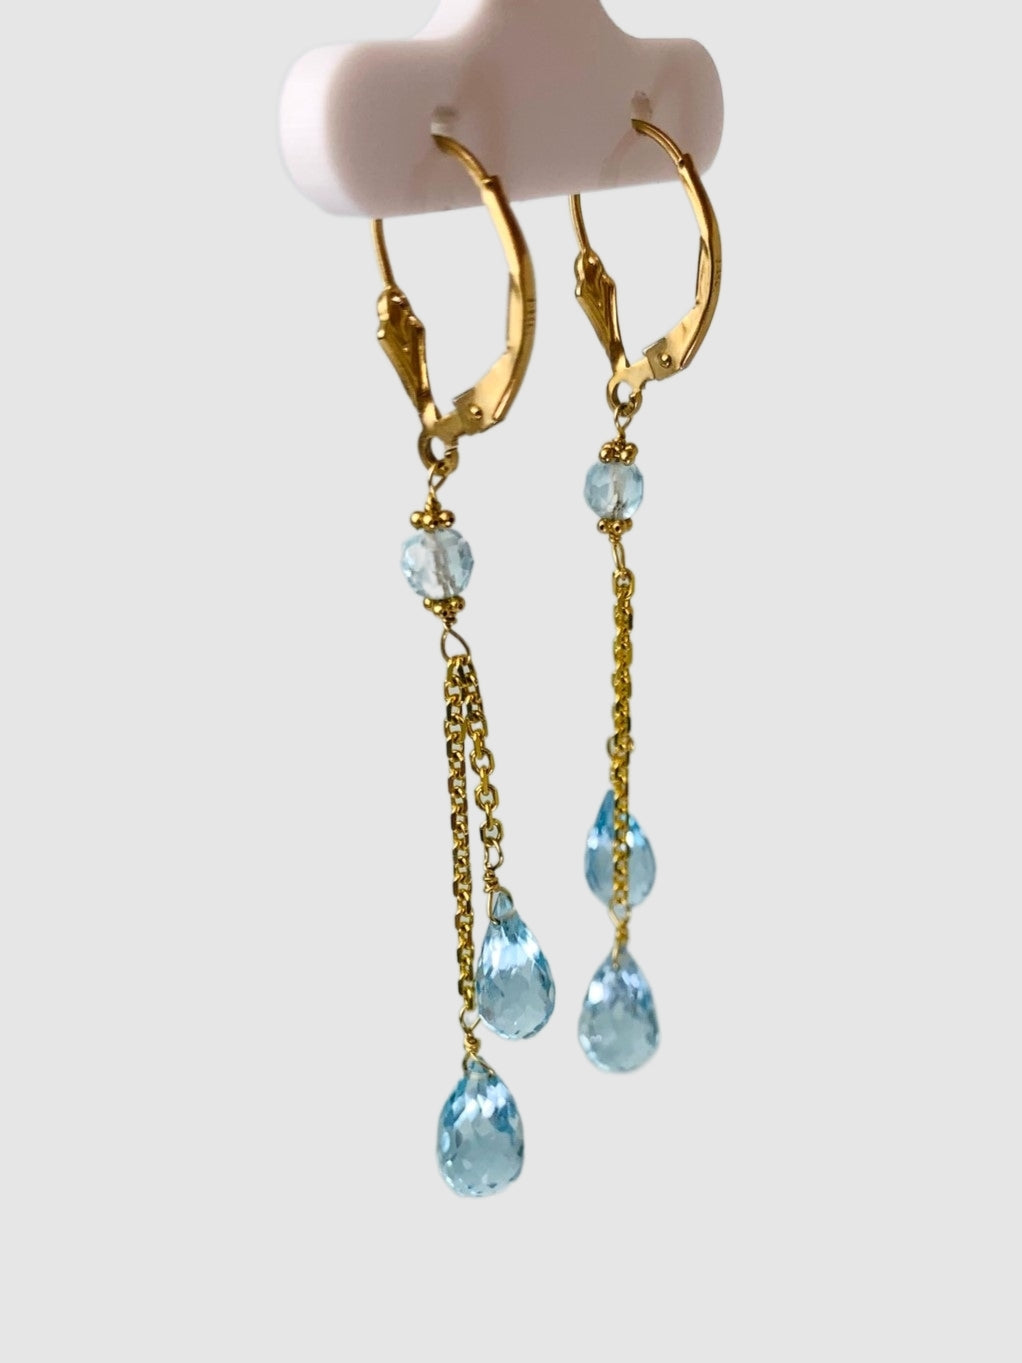 Blue Topaz Lariat Earrings in 14KY - EAR-100-LARGM14Y-BT-LG-LT